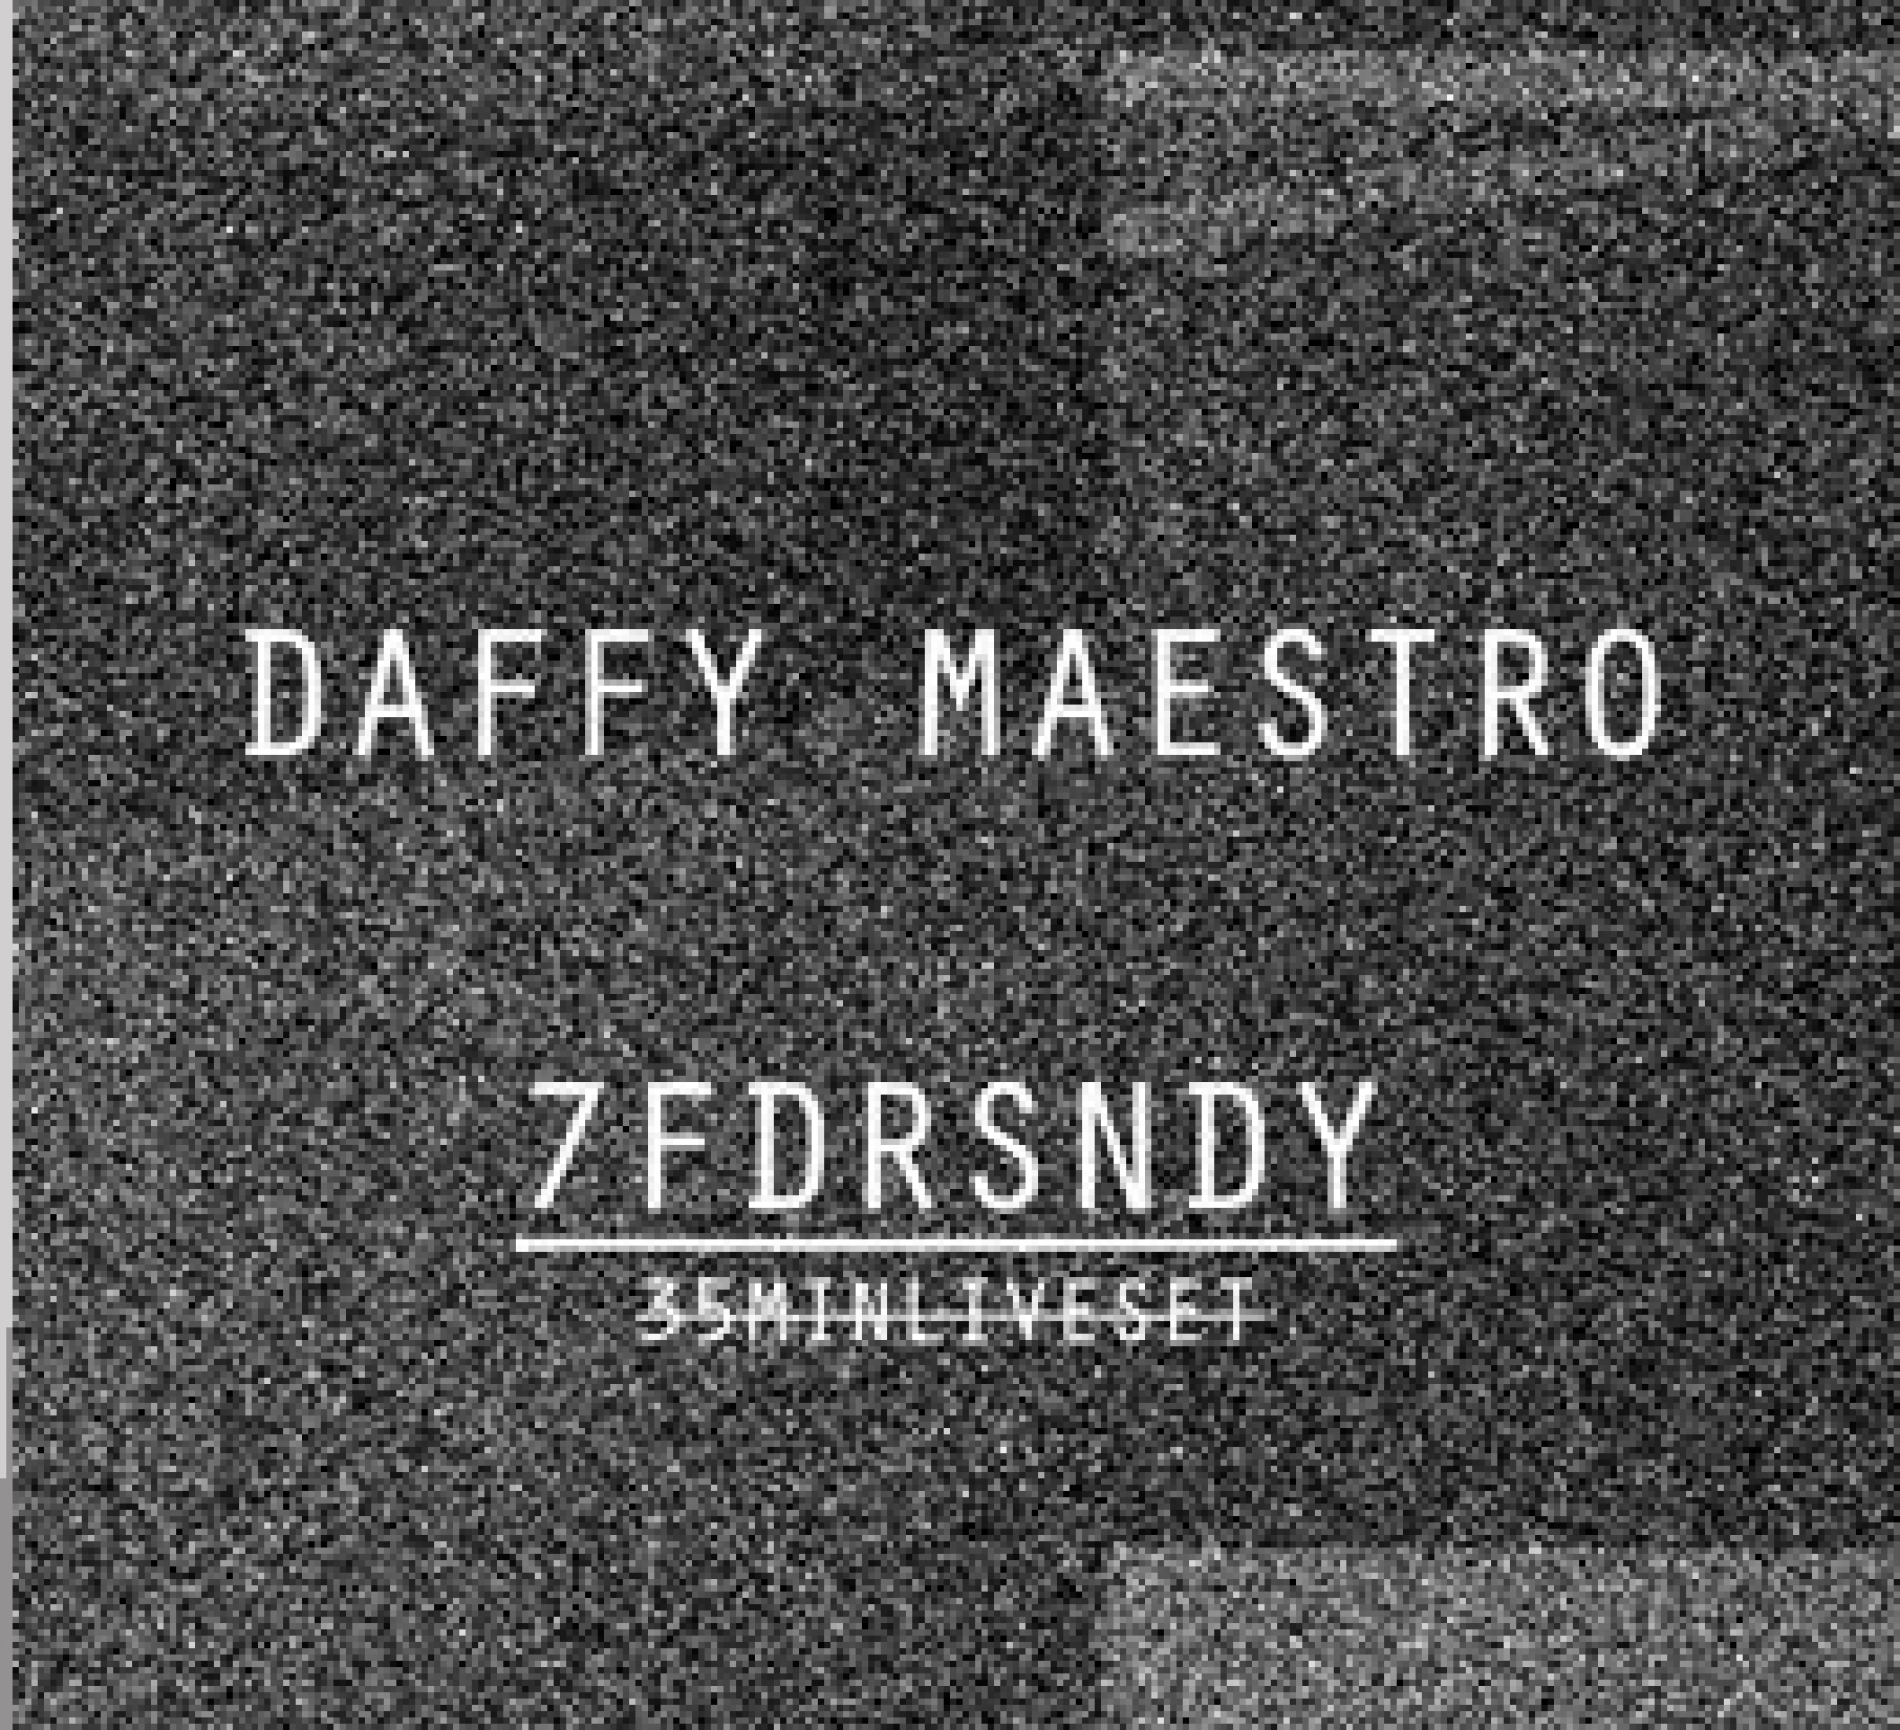 7FDRSNDY By Daffy Maestro